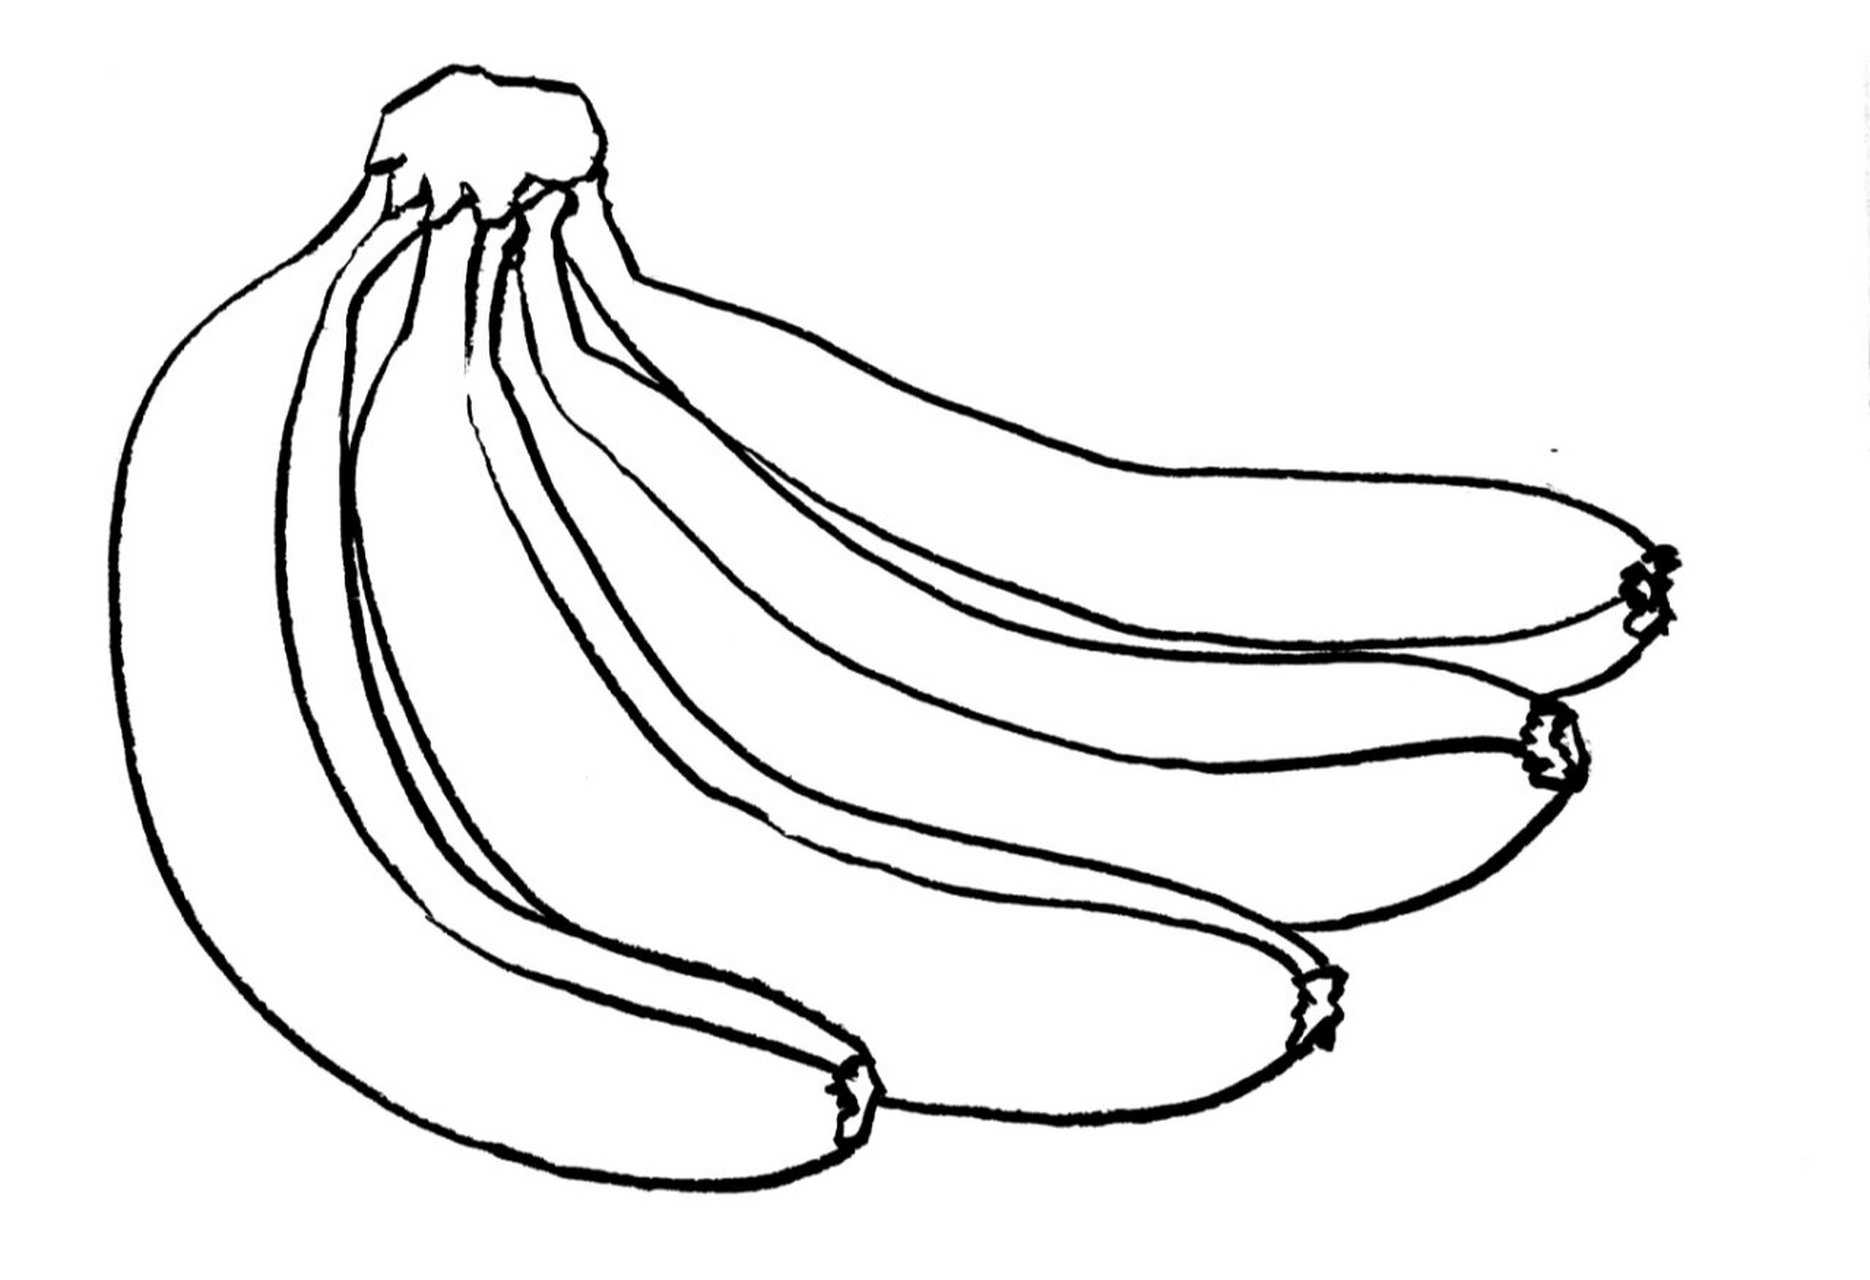 香蕉画法简单画法图片